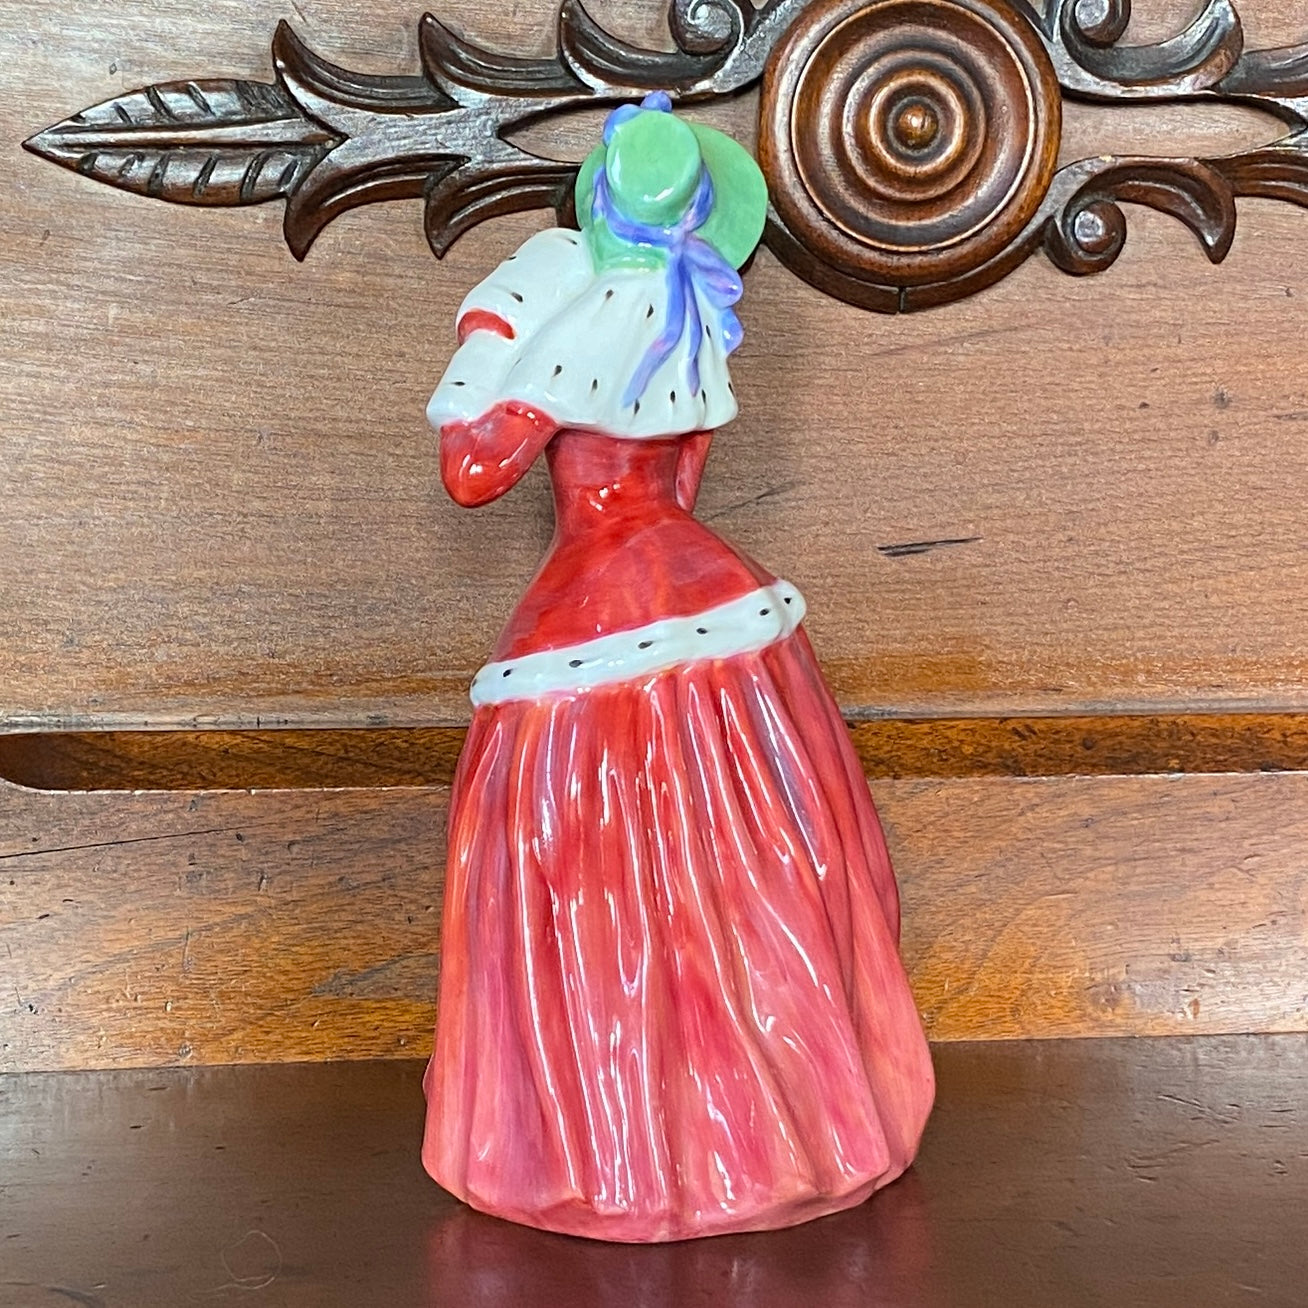 Royal Doulton 'Christmas Morn' Figurine